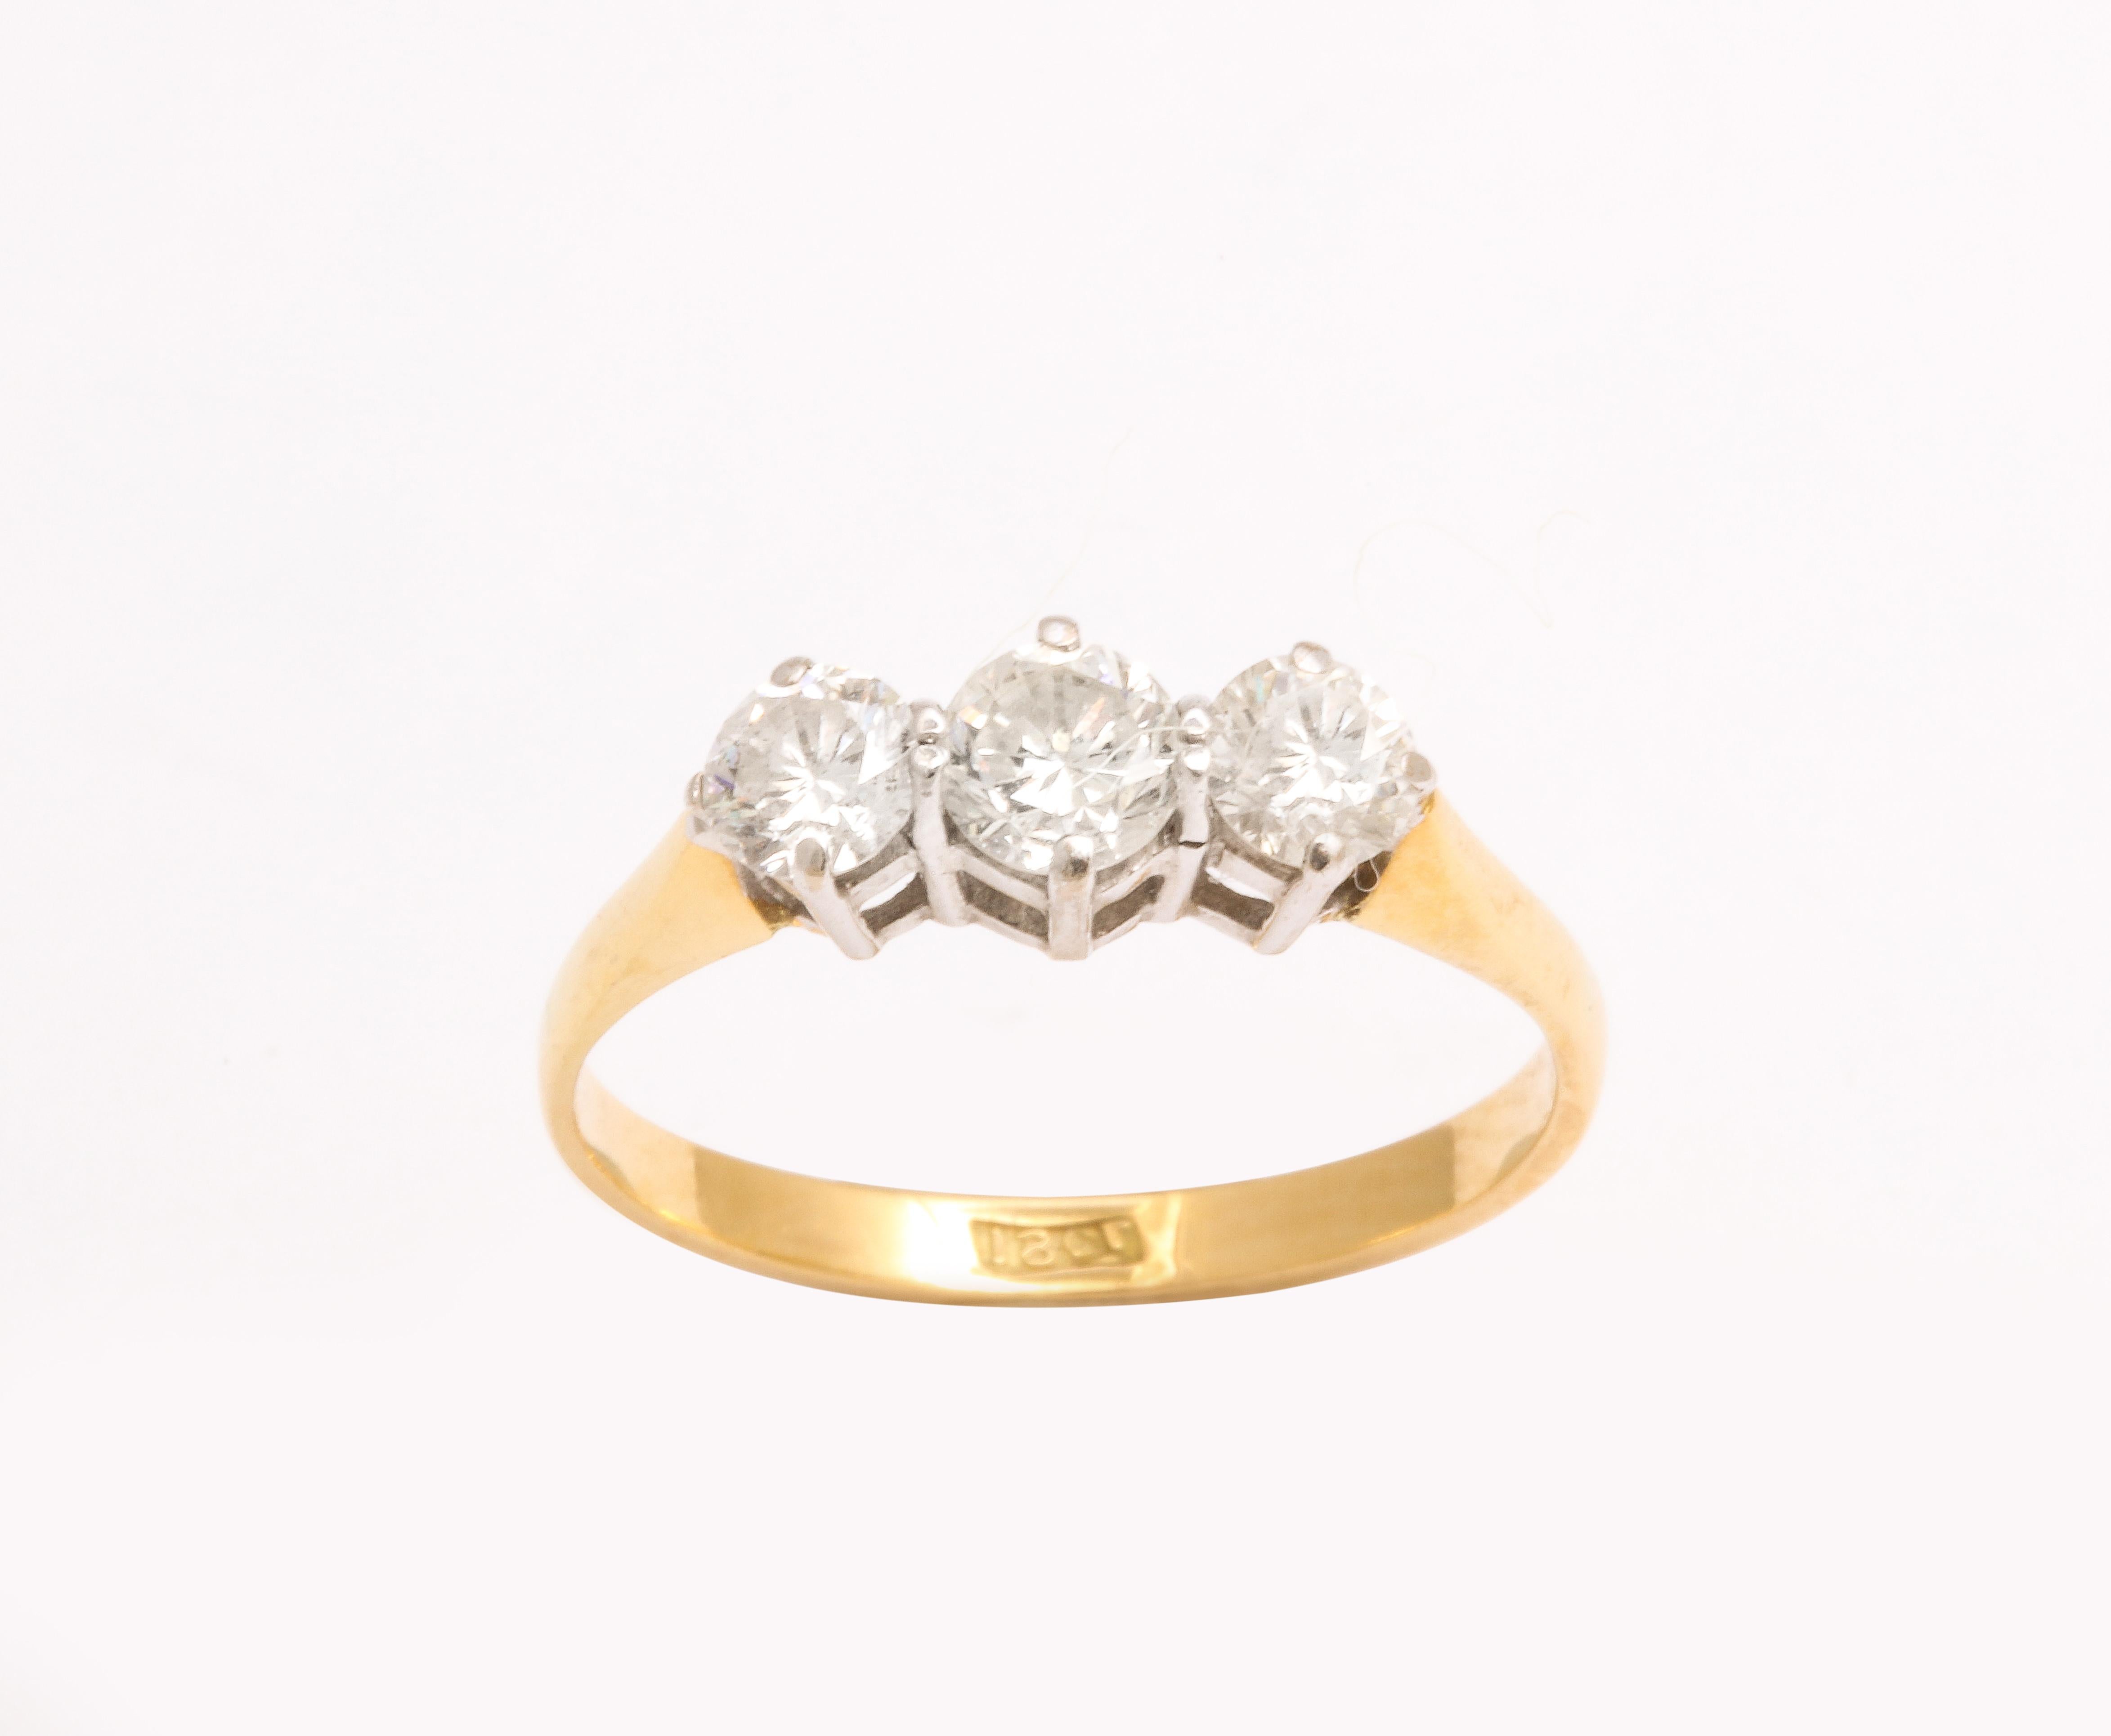 Diamantbänder mit drei Steinen haben etwas Köstliches an sich. Sie können allein, mit einem Verlobungsring oder zusammen mit anderen Ringen getragen werden. Drei extrem feine Übergangsdiamanten um 1900 sind in einen 18-karätigen Goldschaft gefasst,